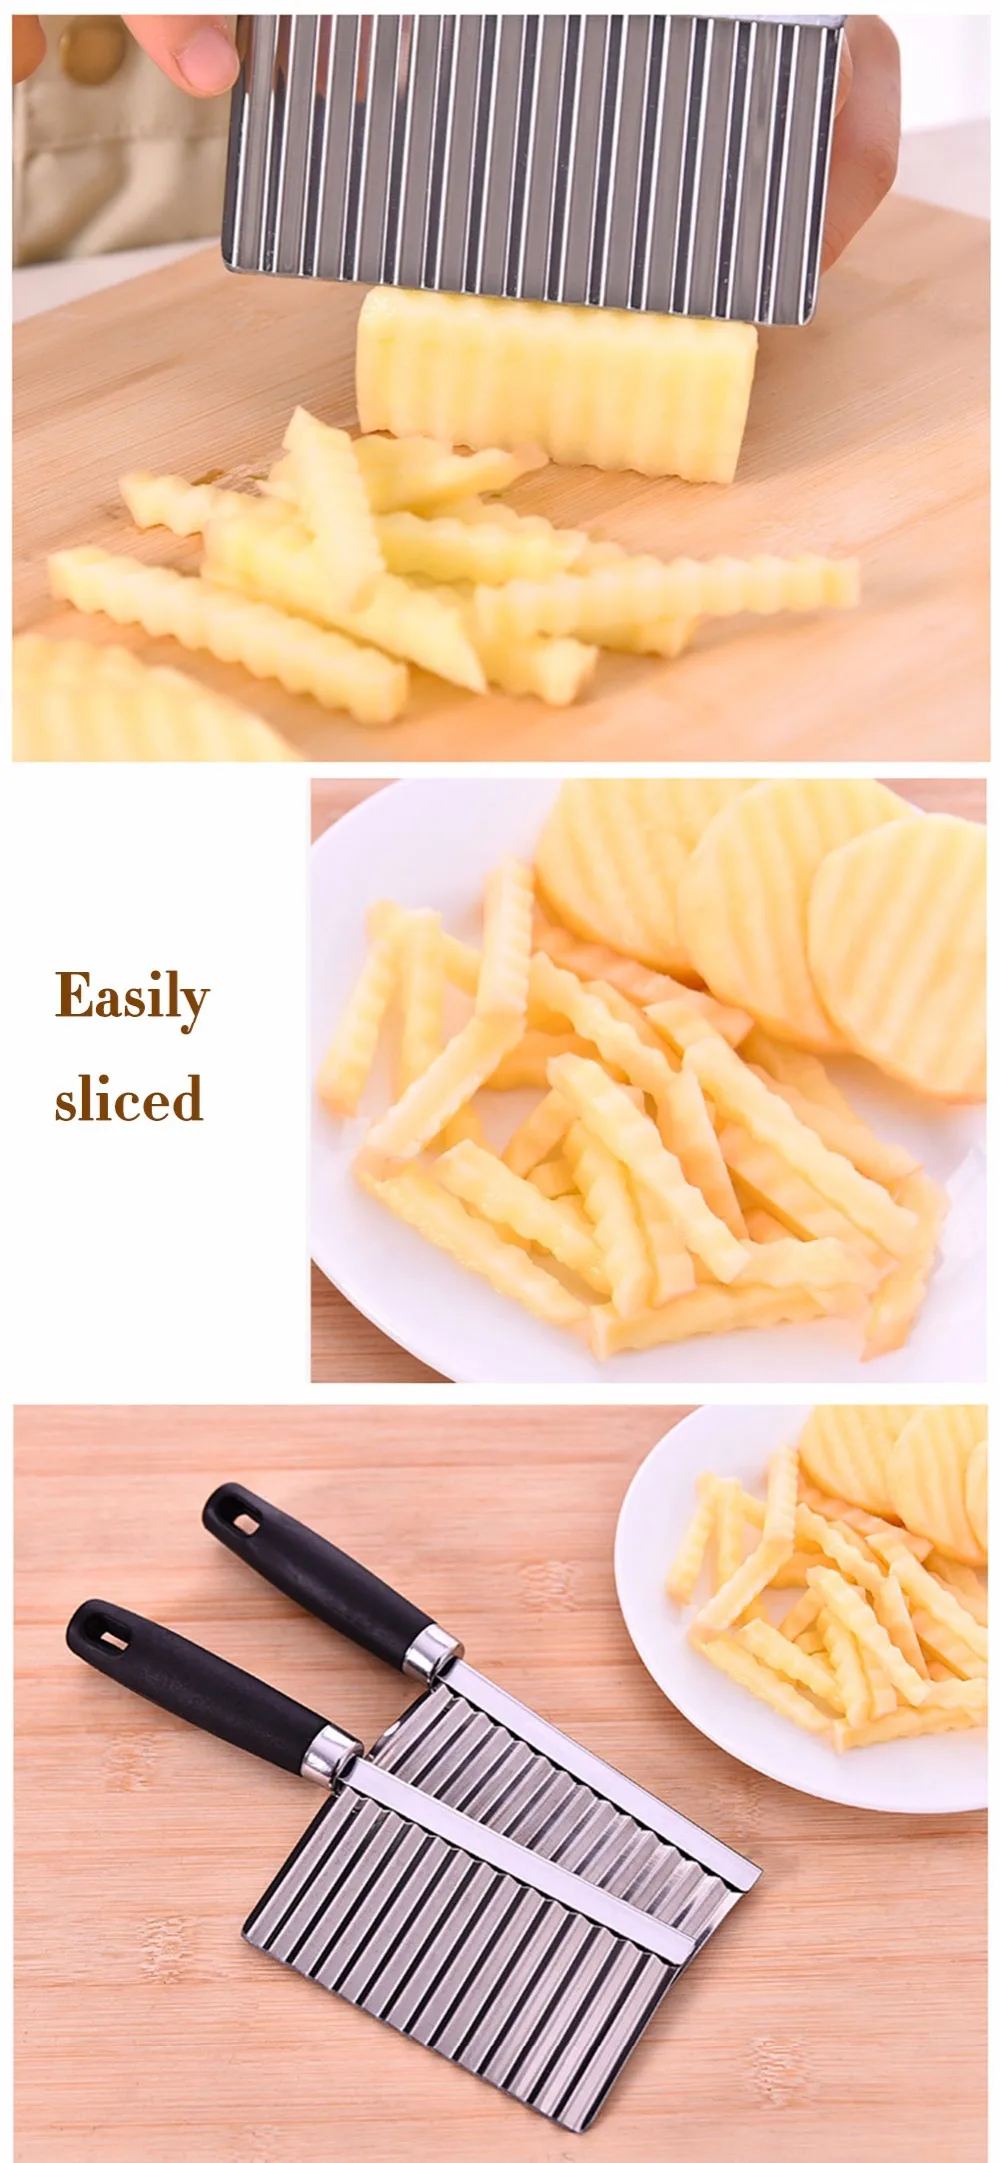 Dehomy ручные Слайсеры картофеля режущие ножи Малый размеры нержавеющая сталь чипсы Cut Кухня Ножи Слайсеры пособия по кулинарии инструменты